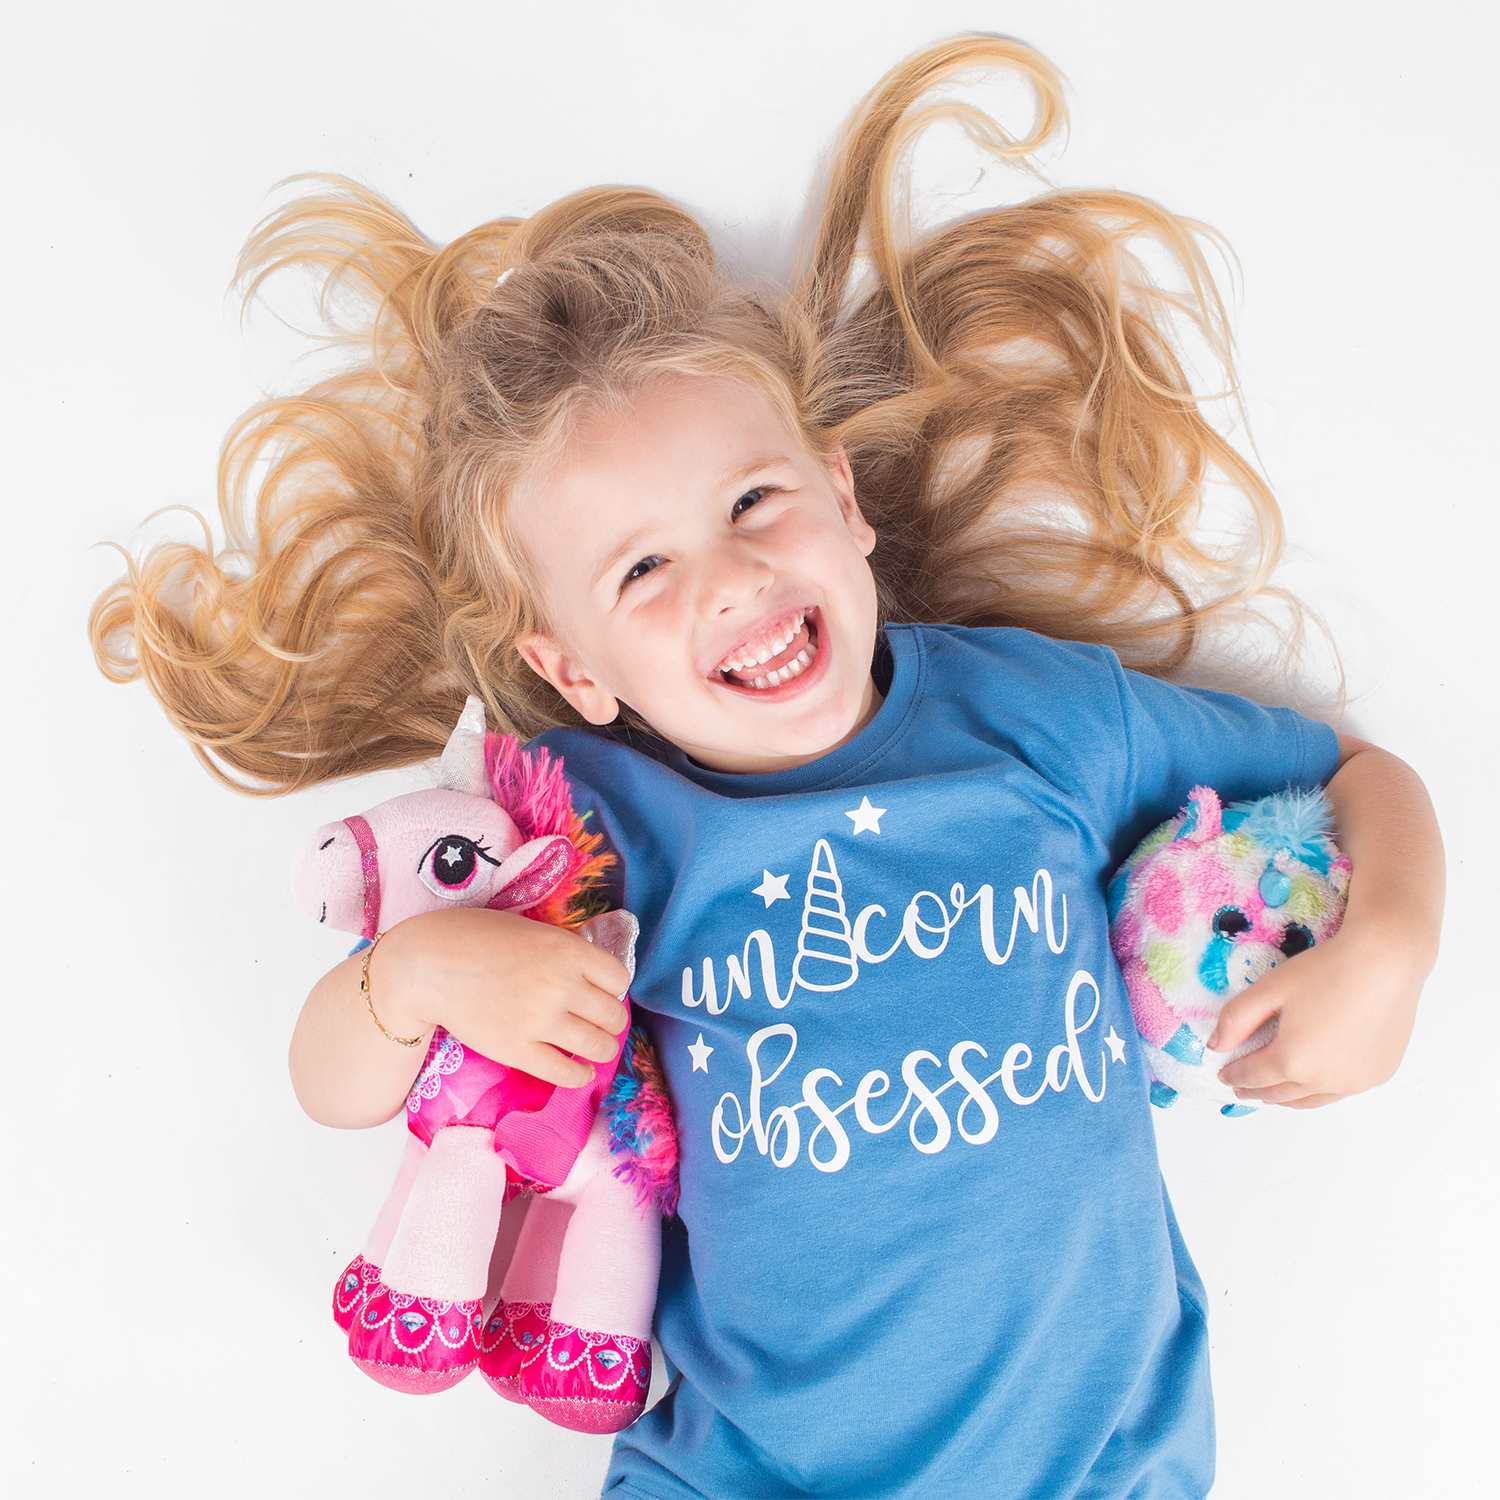 'Unicorn obsessed' kids shortsleeve shirt